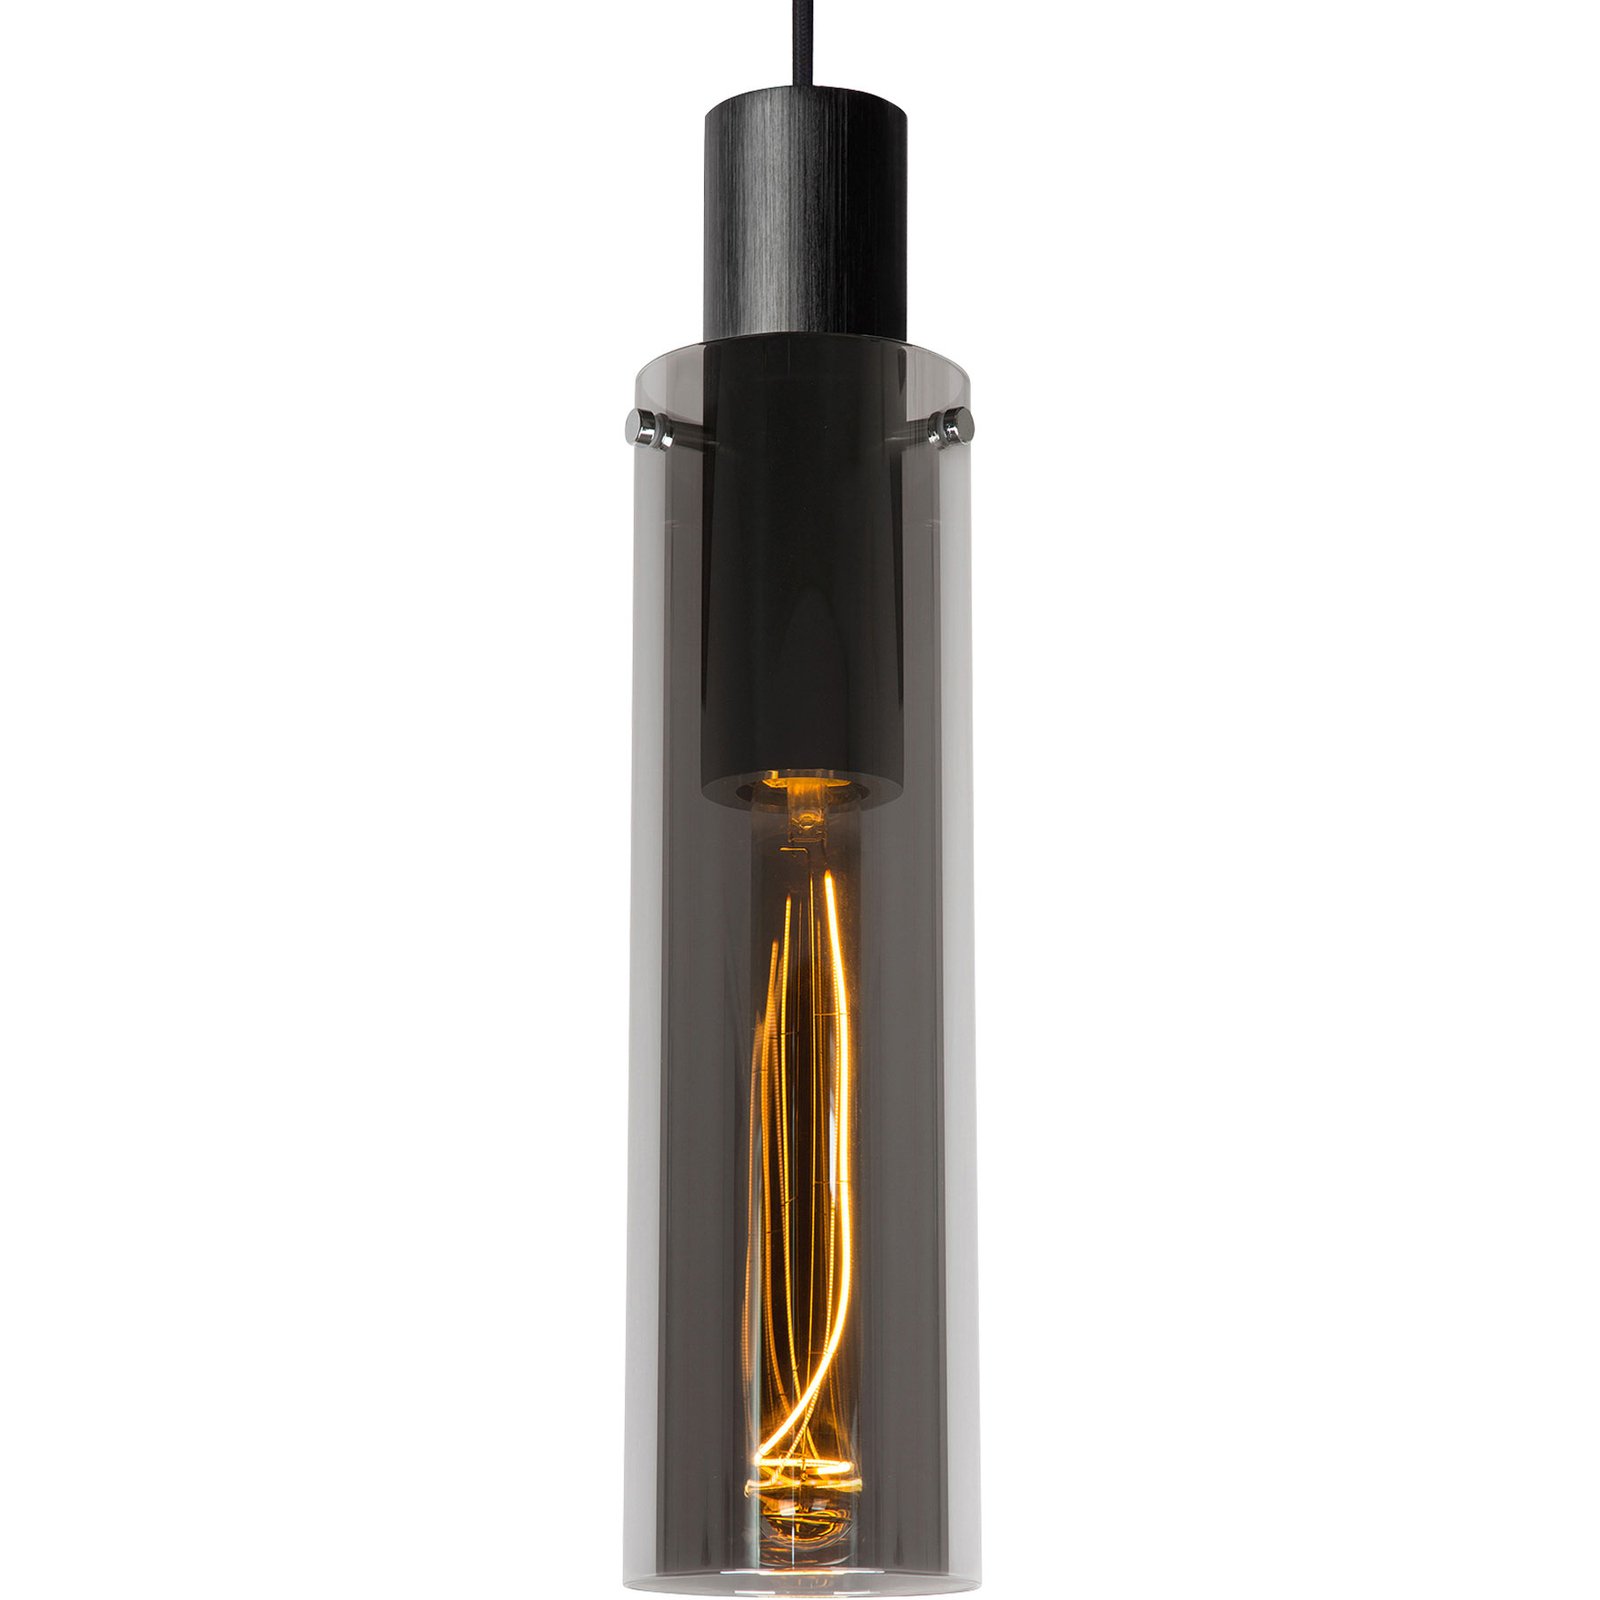 Orlando hanglamp, rookgrijs, 1-lamp